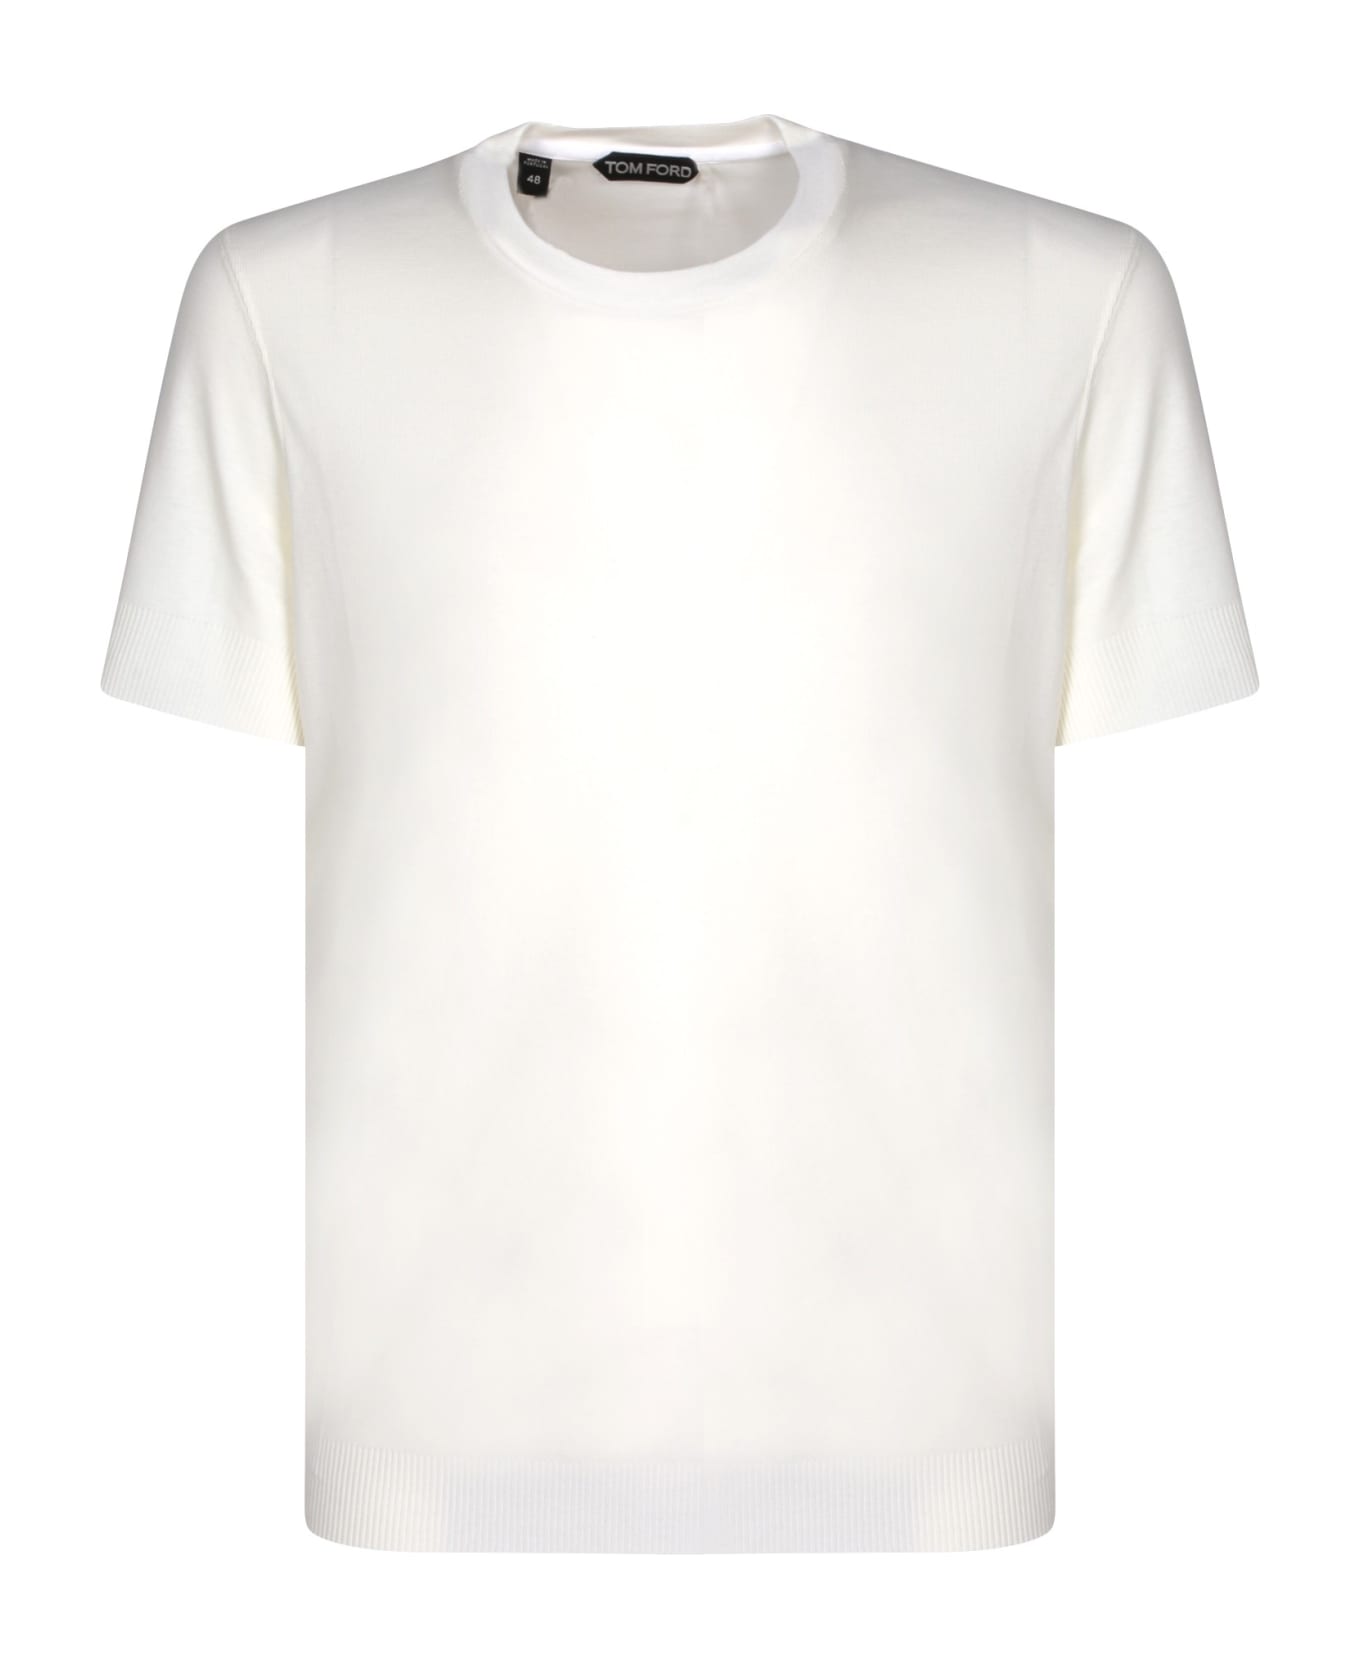 Tom Ford Ribber White T-shirt - White